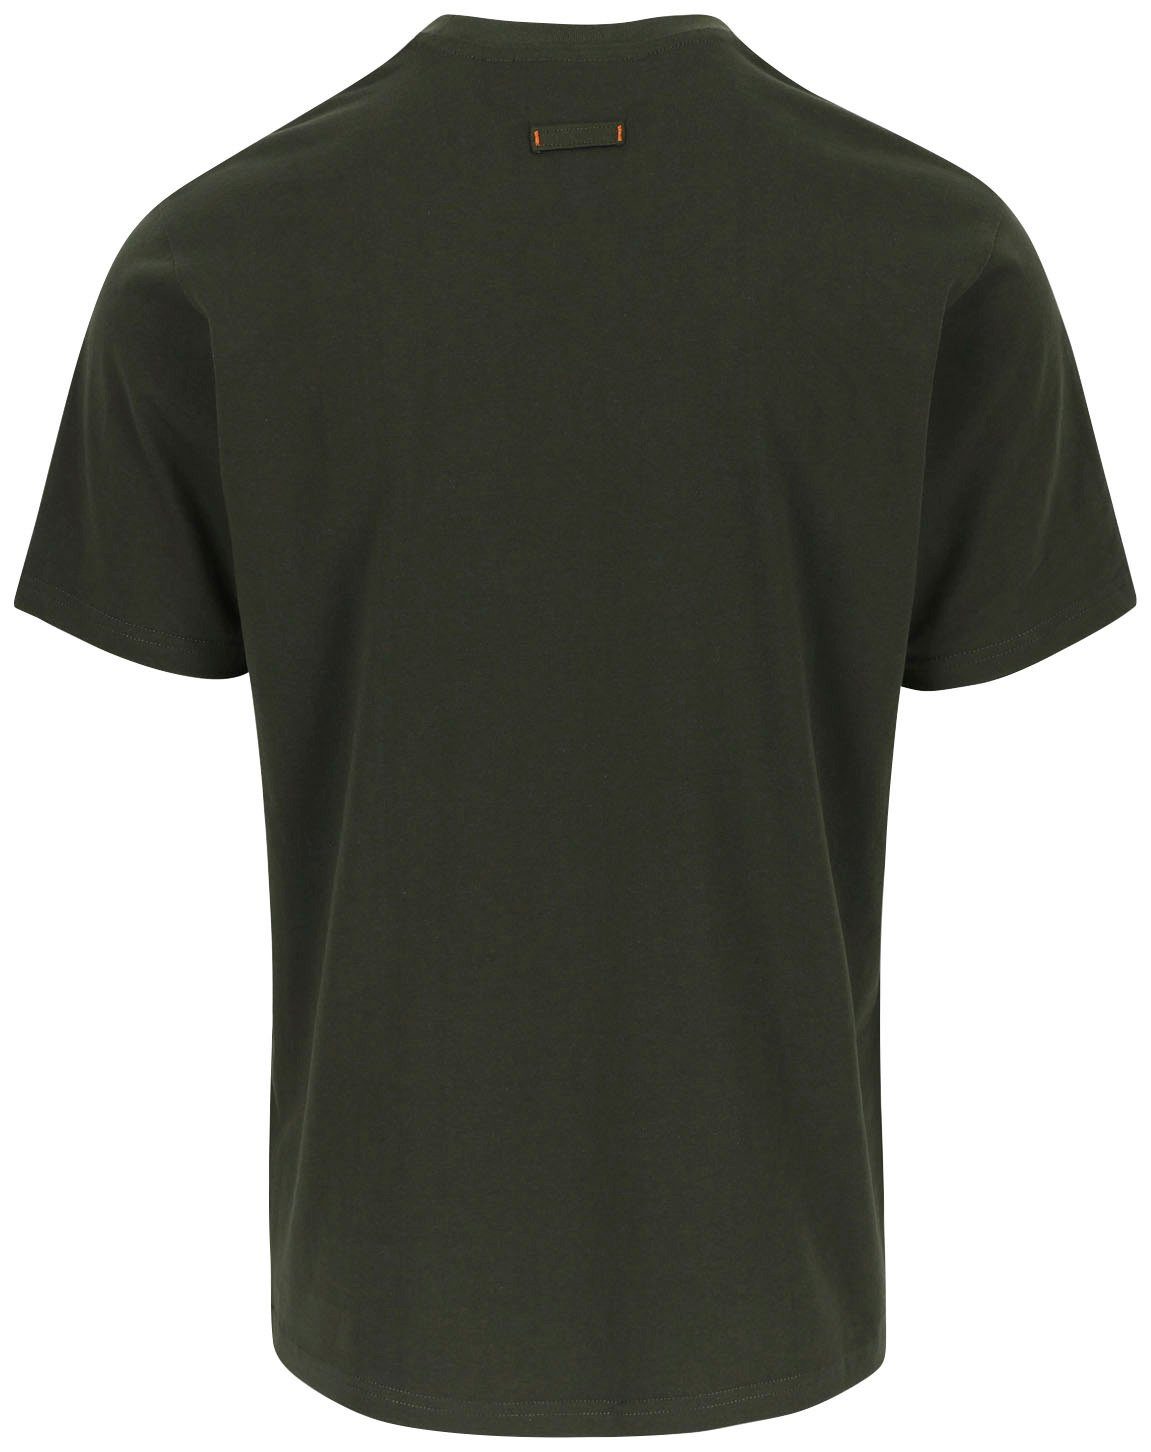 Herock T-Shirt ENI Rundhals, Baumwolle, Herock®-Aufdruck, mit khaki angenehmes Tragegefühl